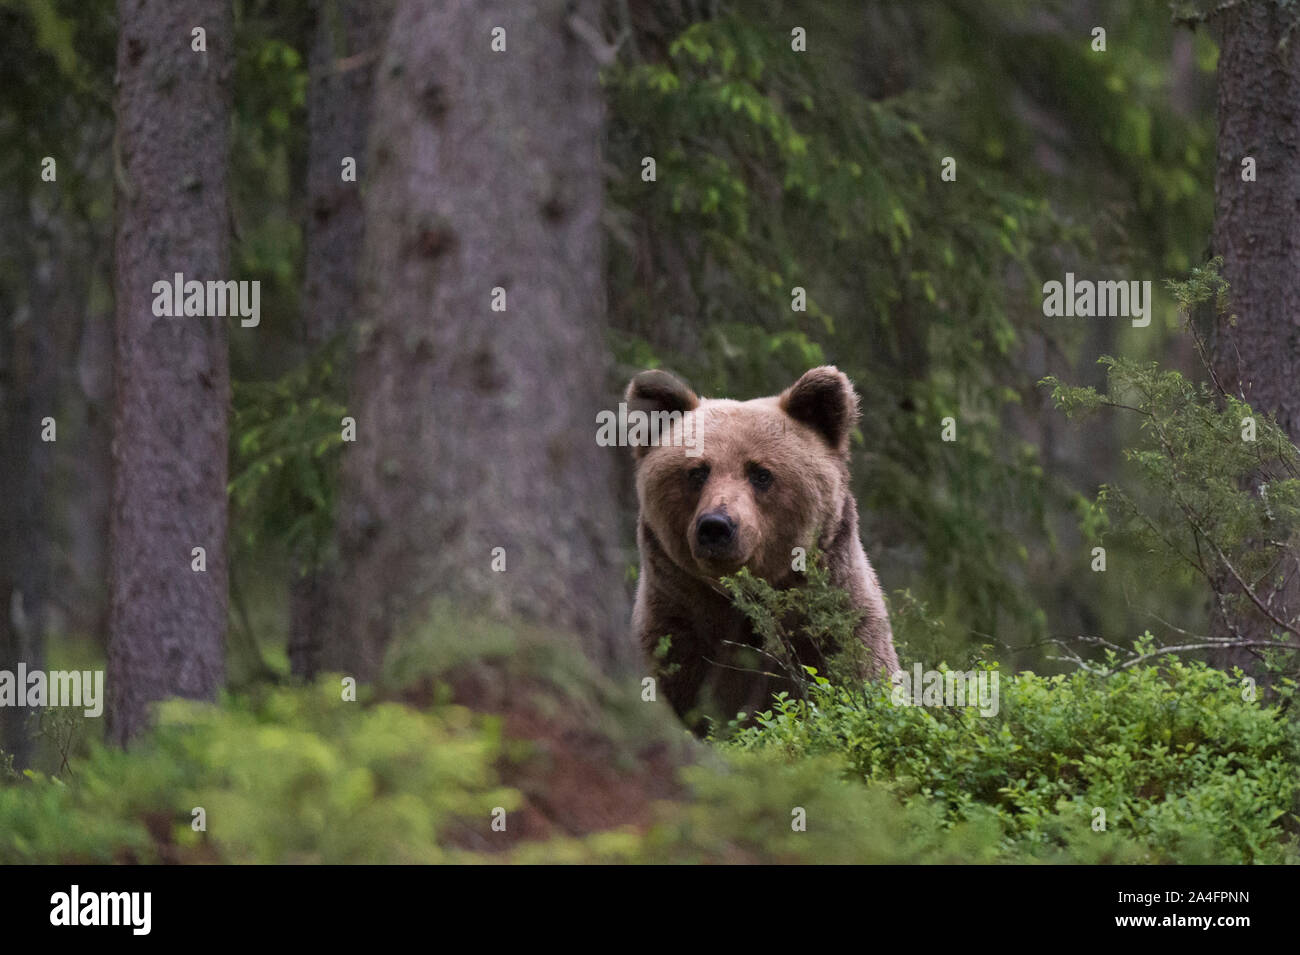 European brown bear (Ursus arctos), Kuhmo, Finland. Stock Photo